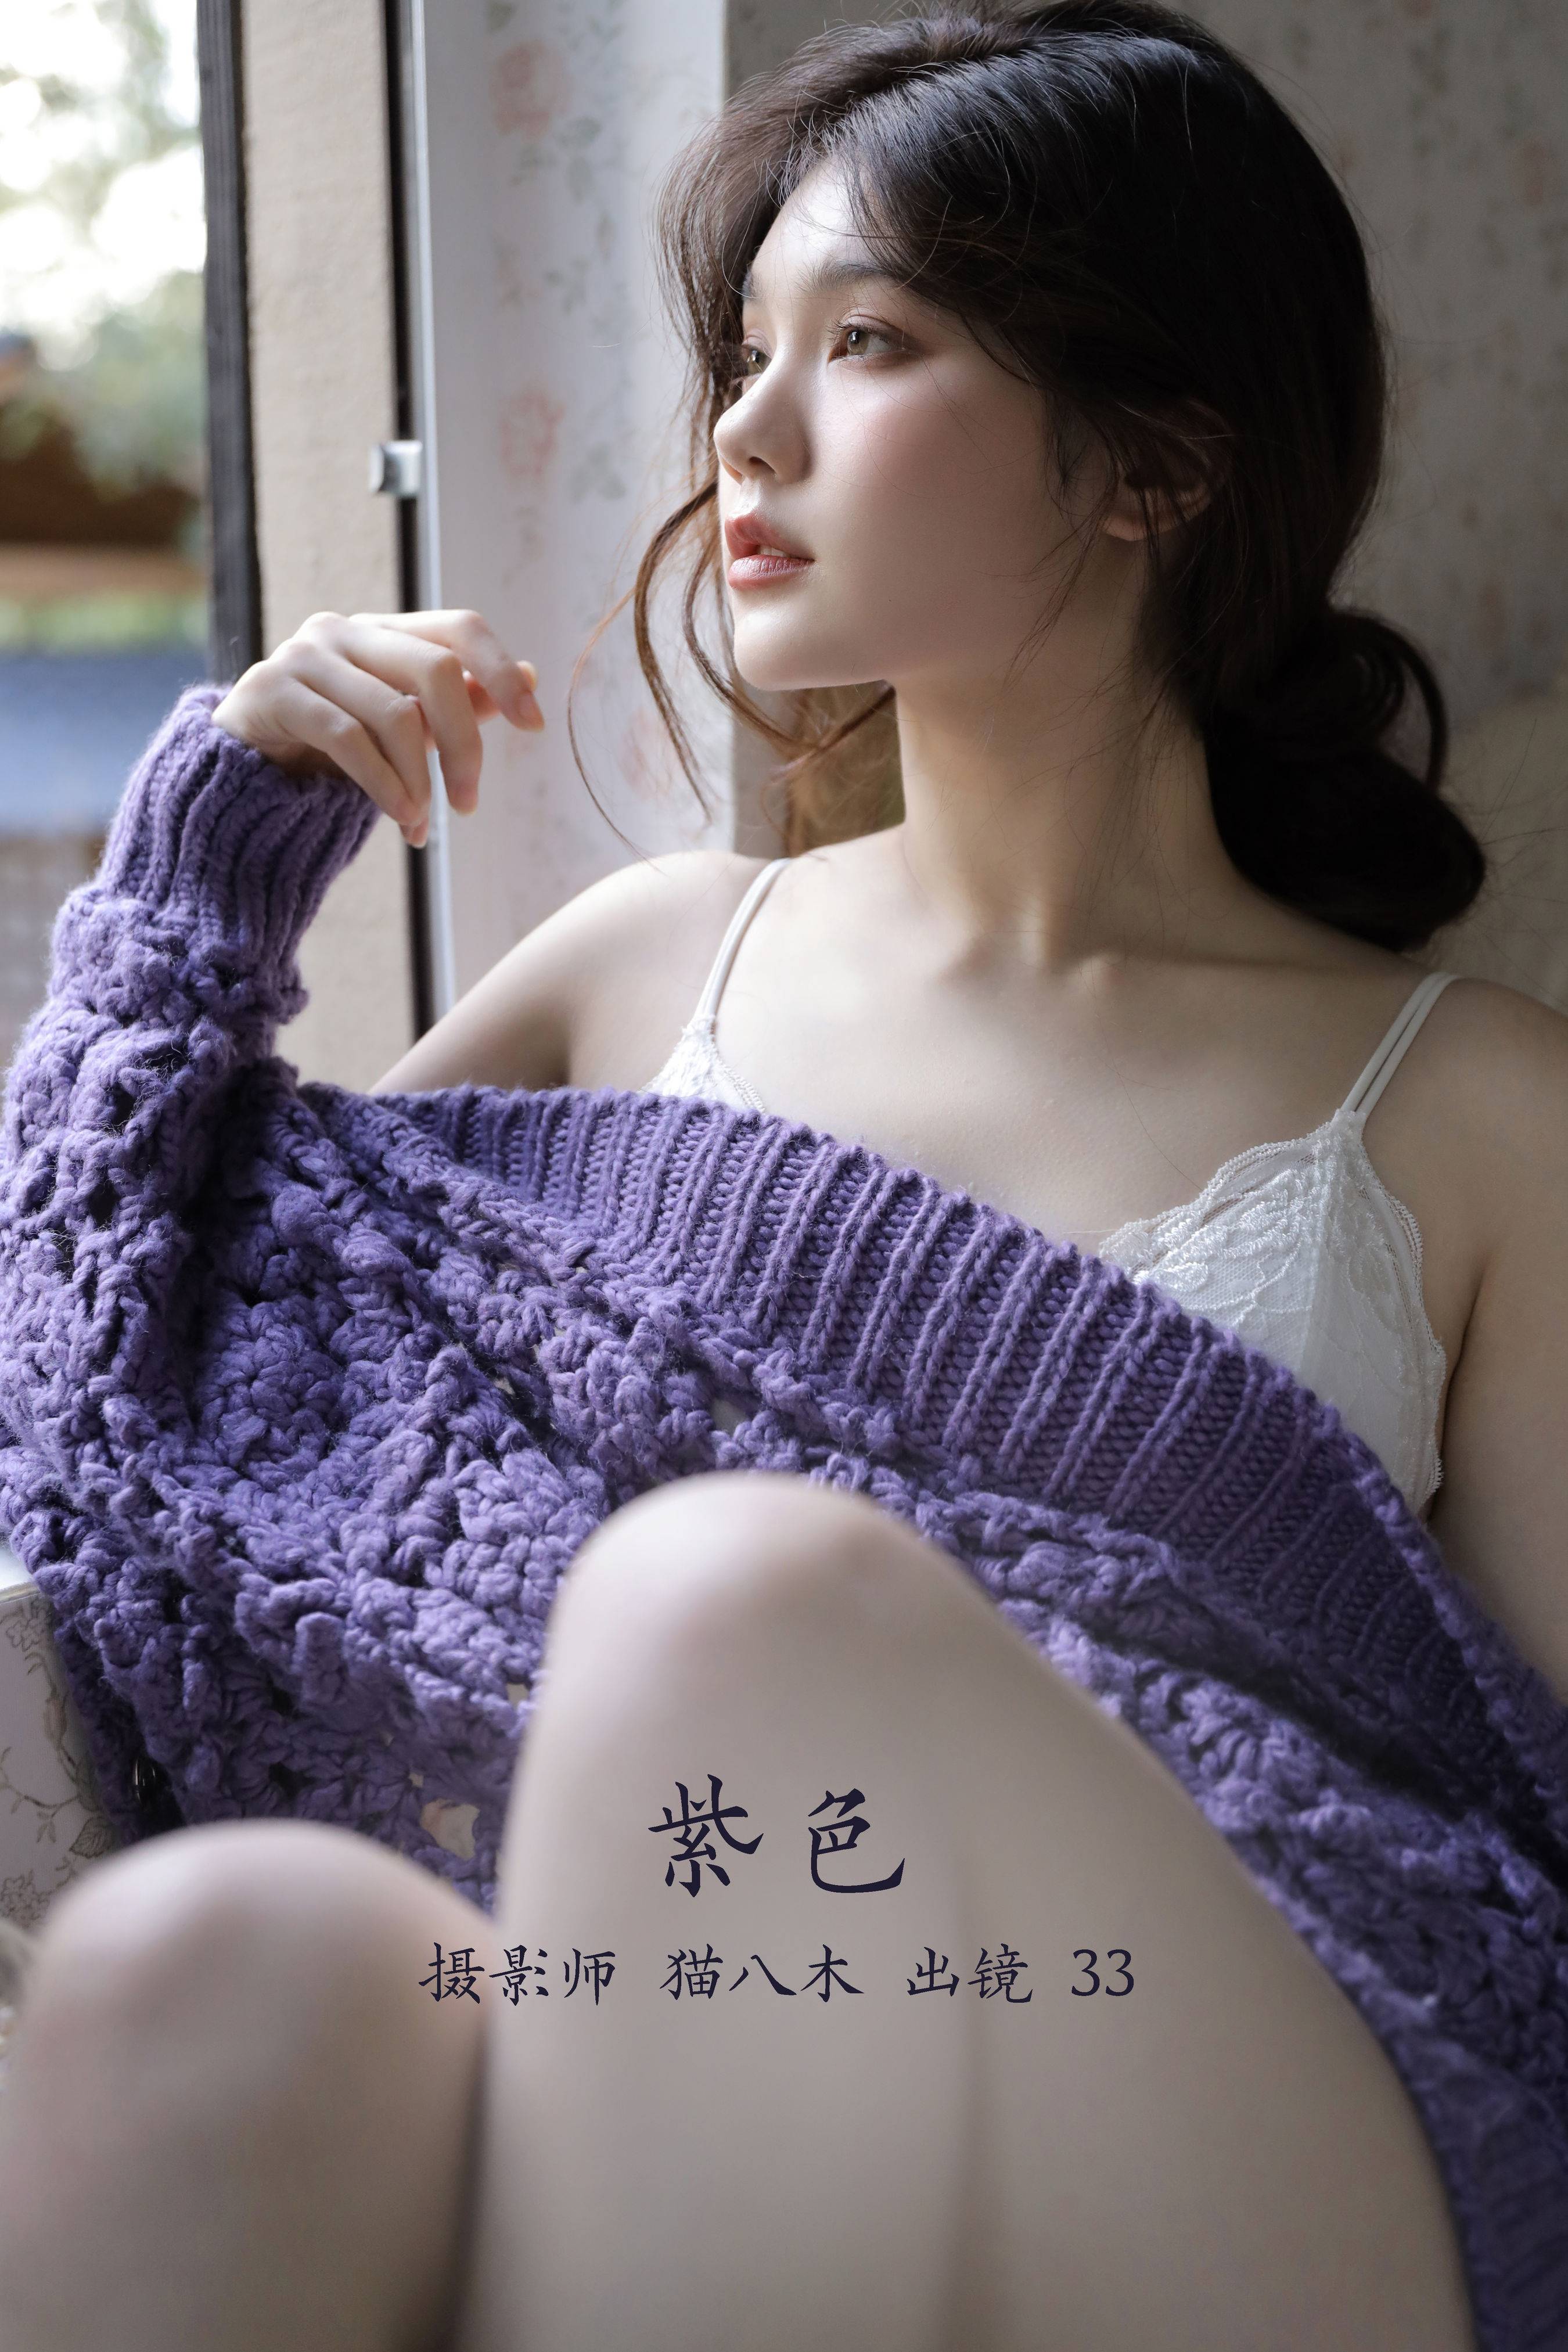 紫色 模特 私房摄影 人像&YiTuYu艺图语-1